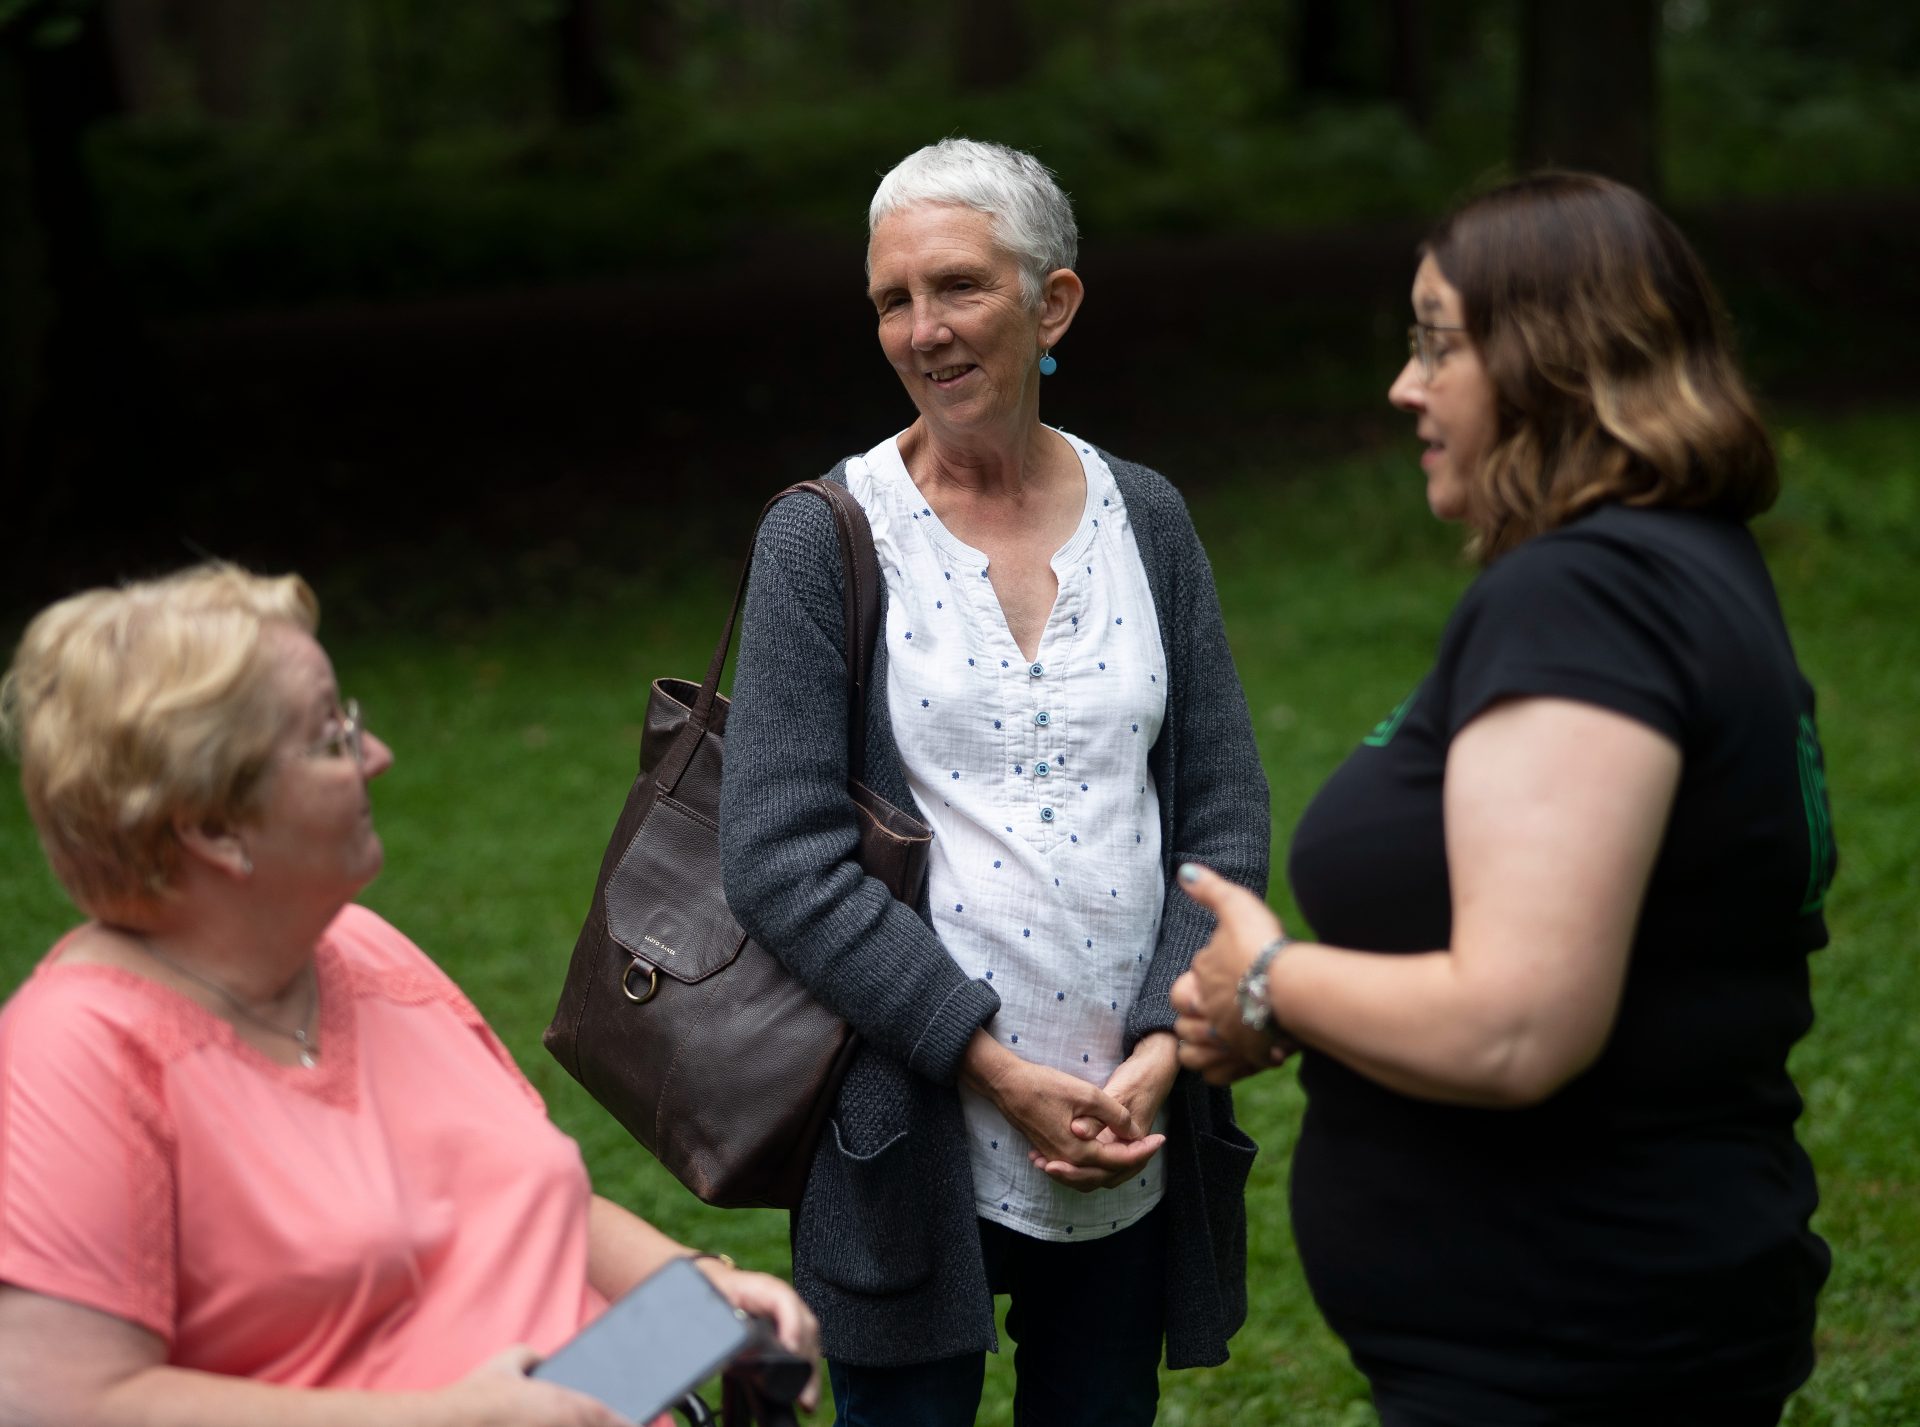 Ann Cleeves meets community members